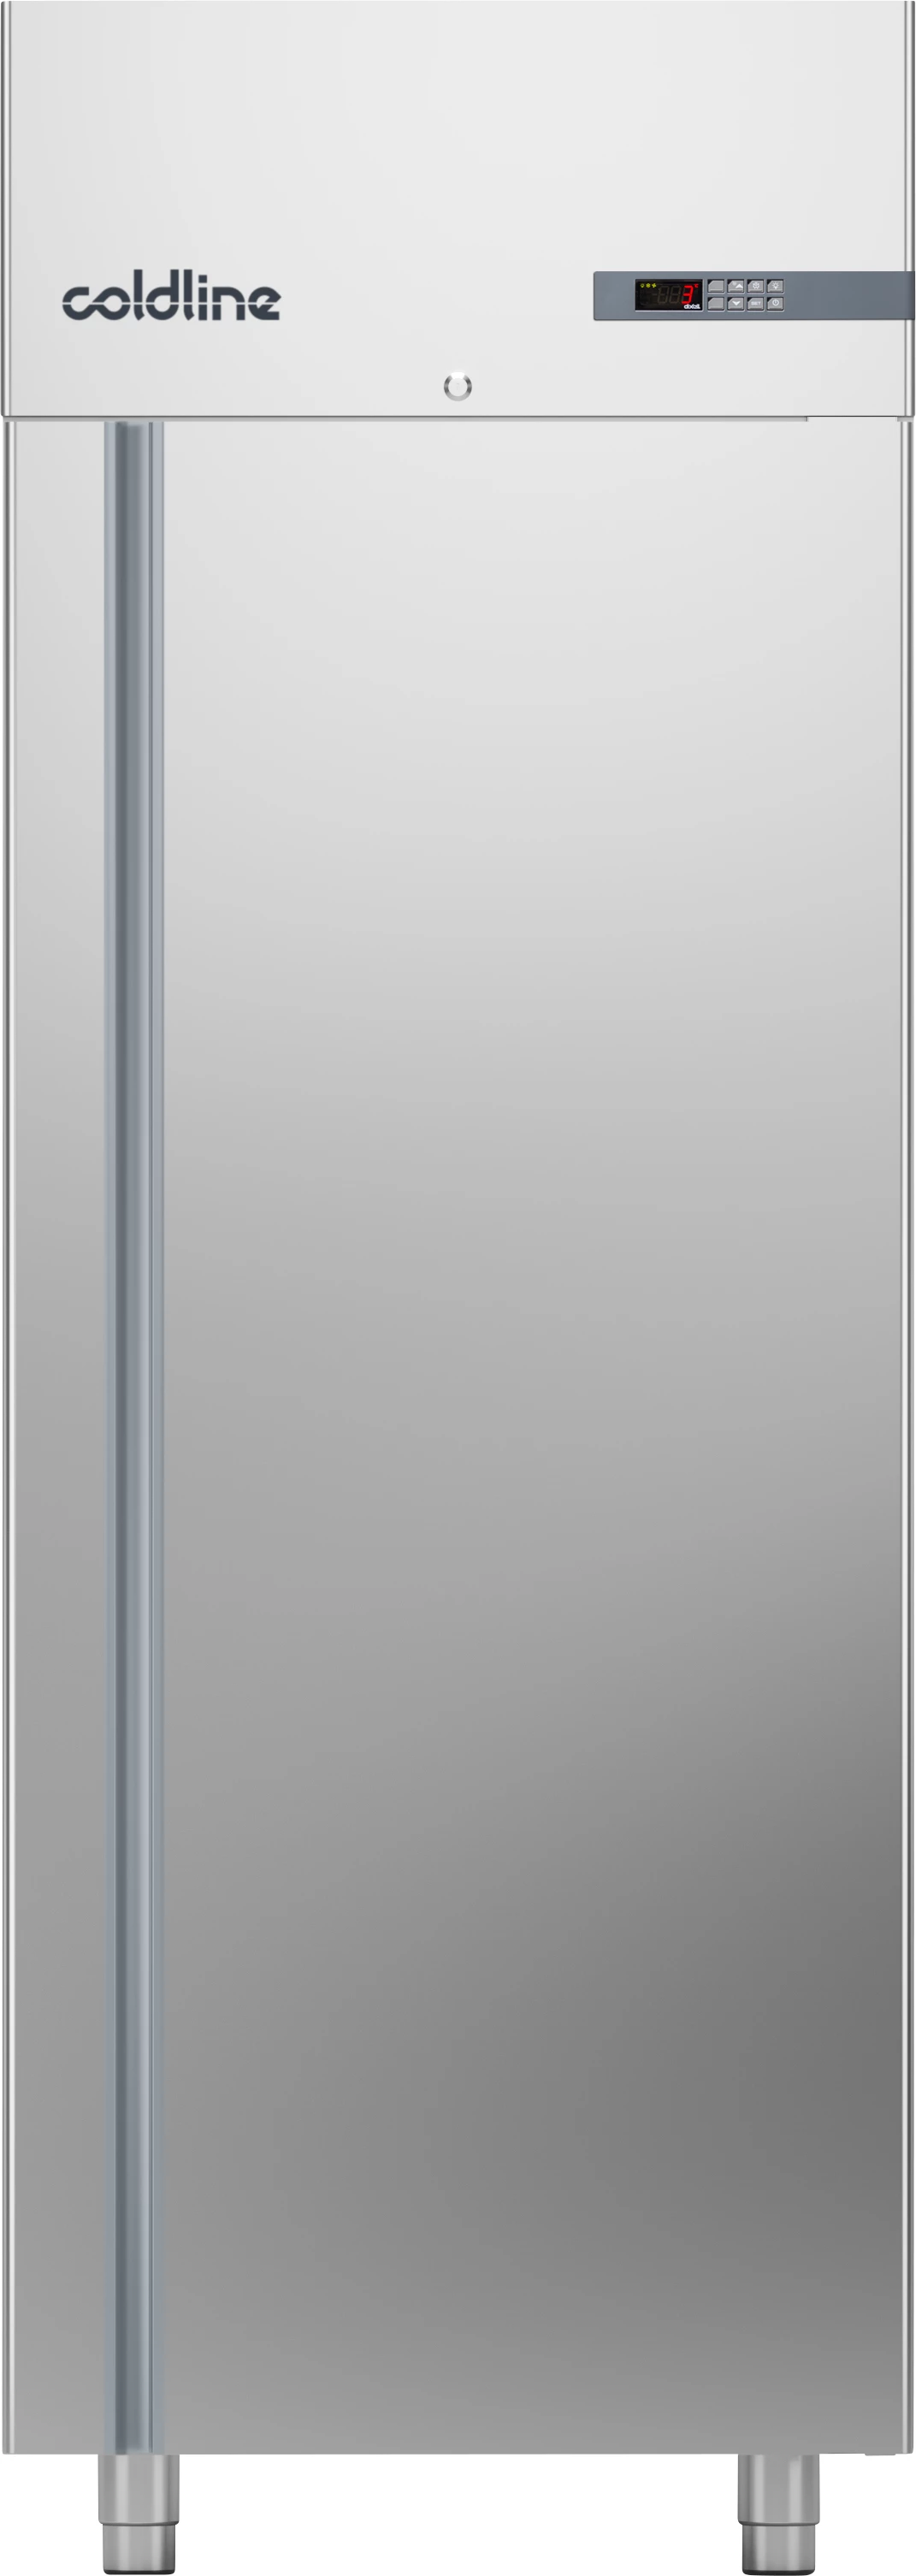 Coldline Smart A70/1ME køleskab